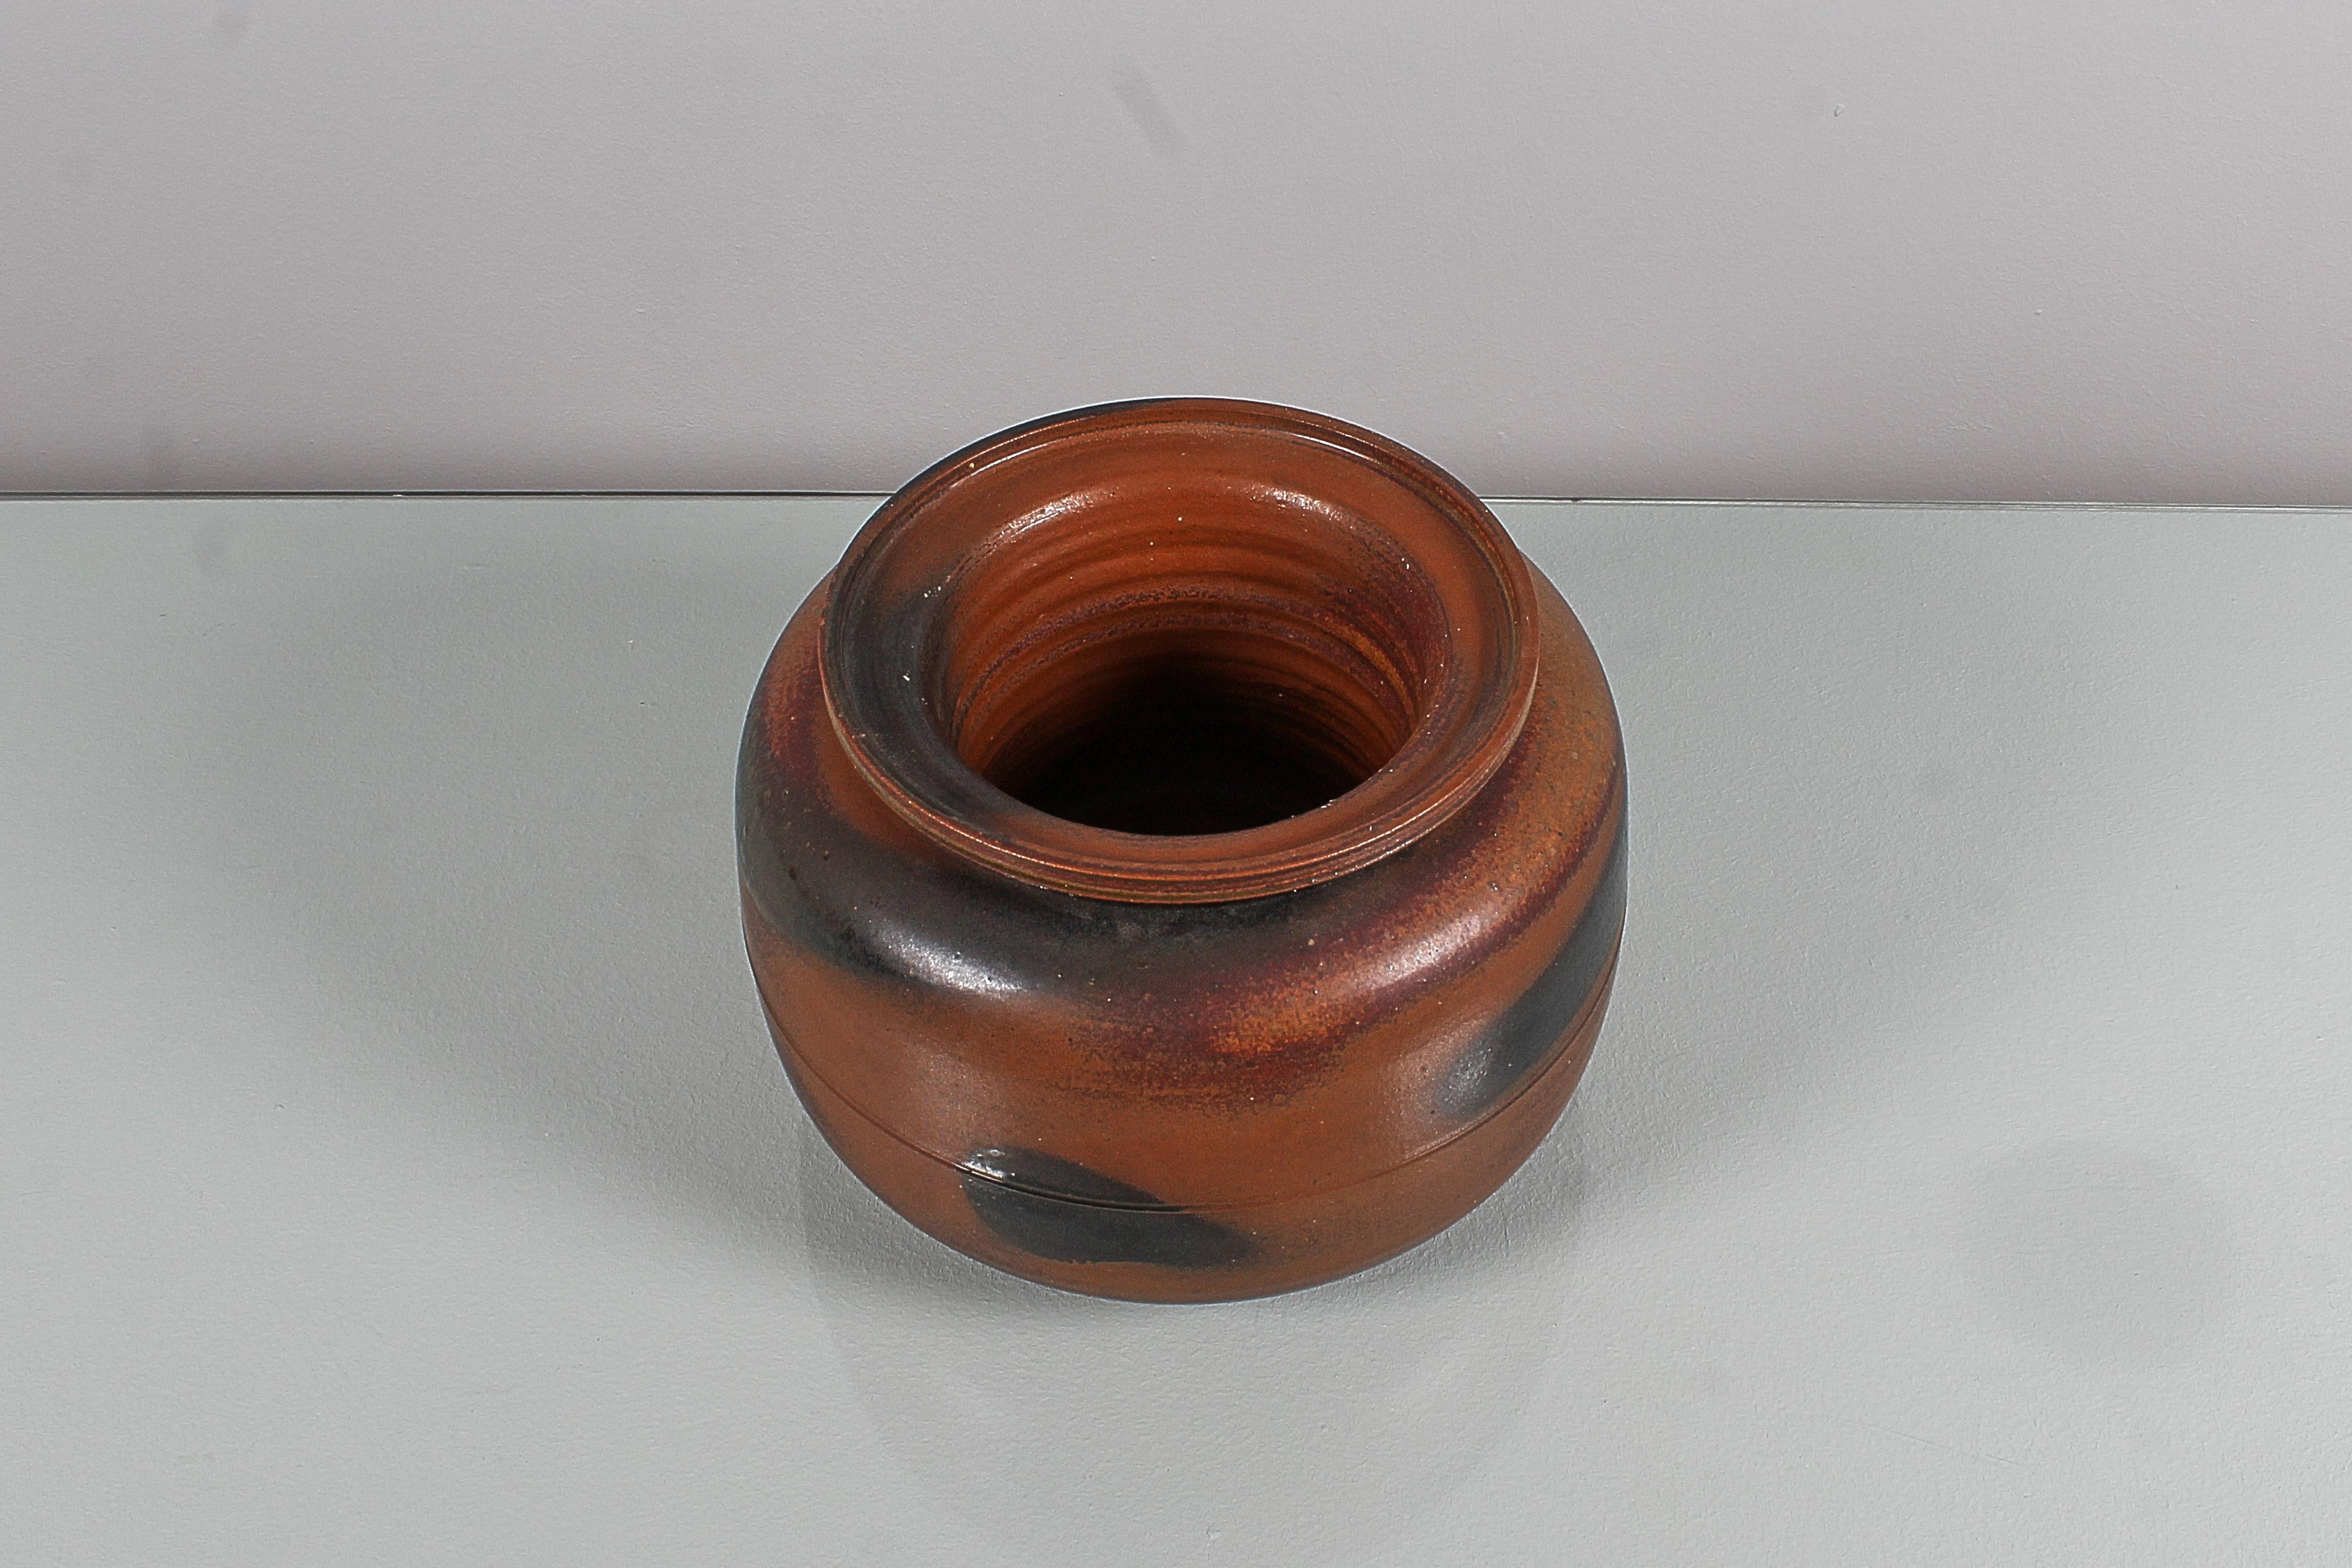 Schöner Übertopf - runder Tafelaufsatz mit abnehmbarer Vase, aus in Brauntönen bemalter Keramik. Von Franco Bucci, Laboratorio Pesaro (Initialen 